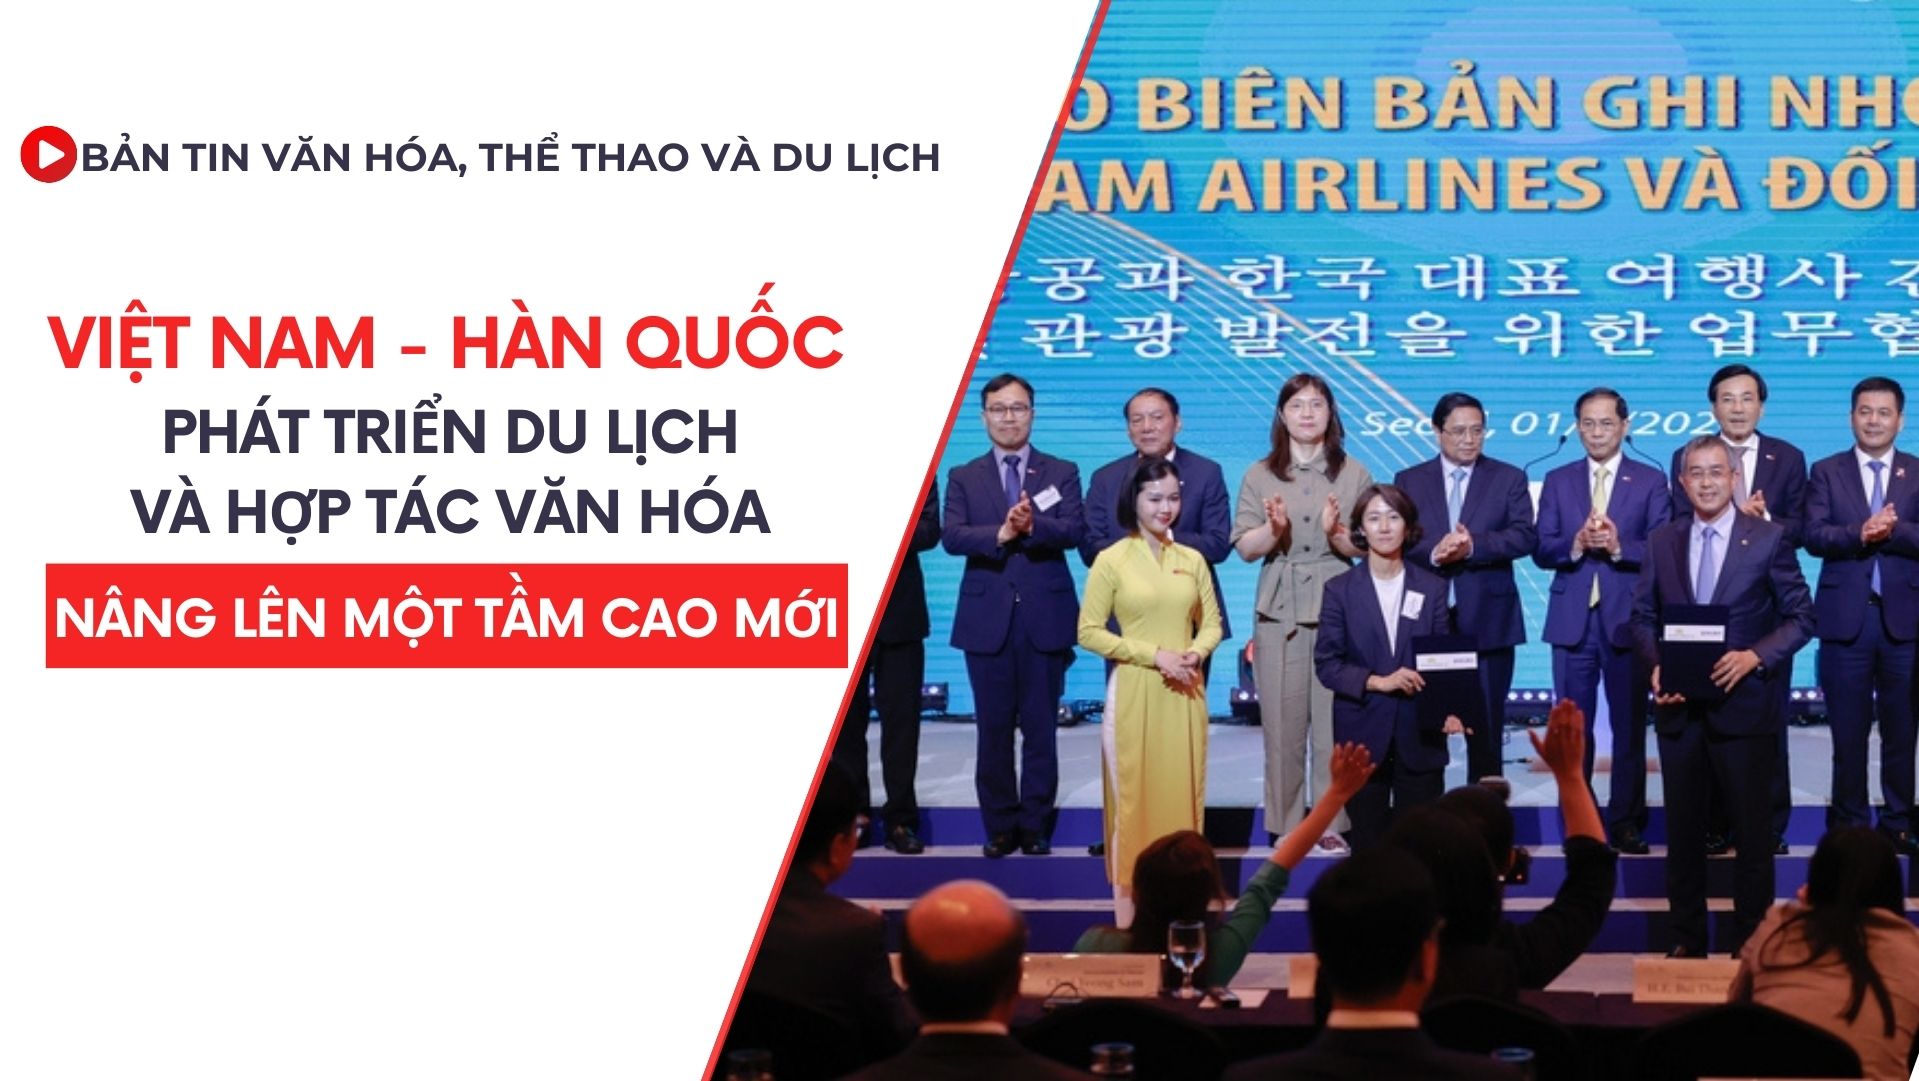 Bản tin VHTTDL số 334: Việt Nam – Hàn Quốc: Phát triển du lịch và hợp tác văn hóa nâng lên một tầm cao mới